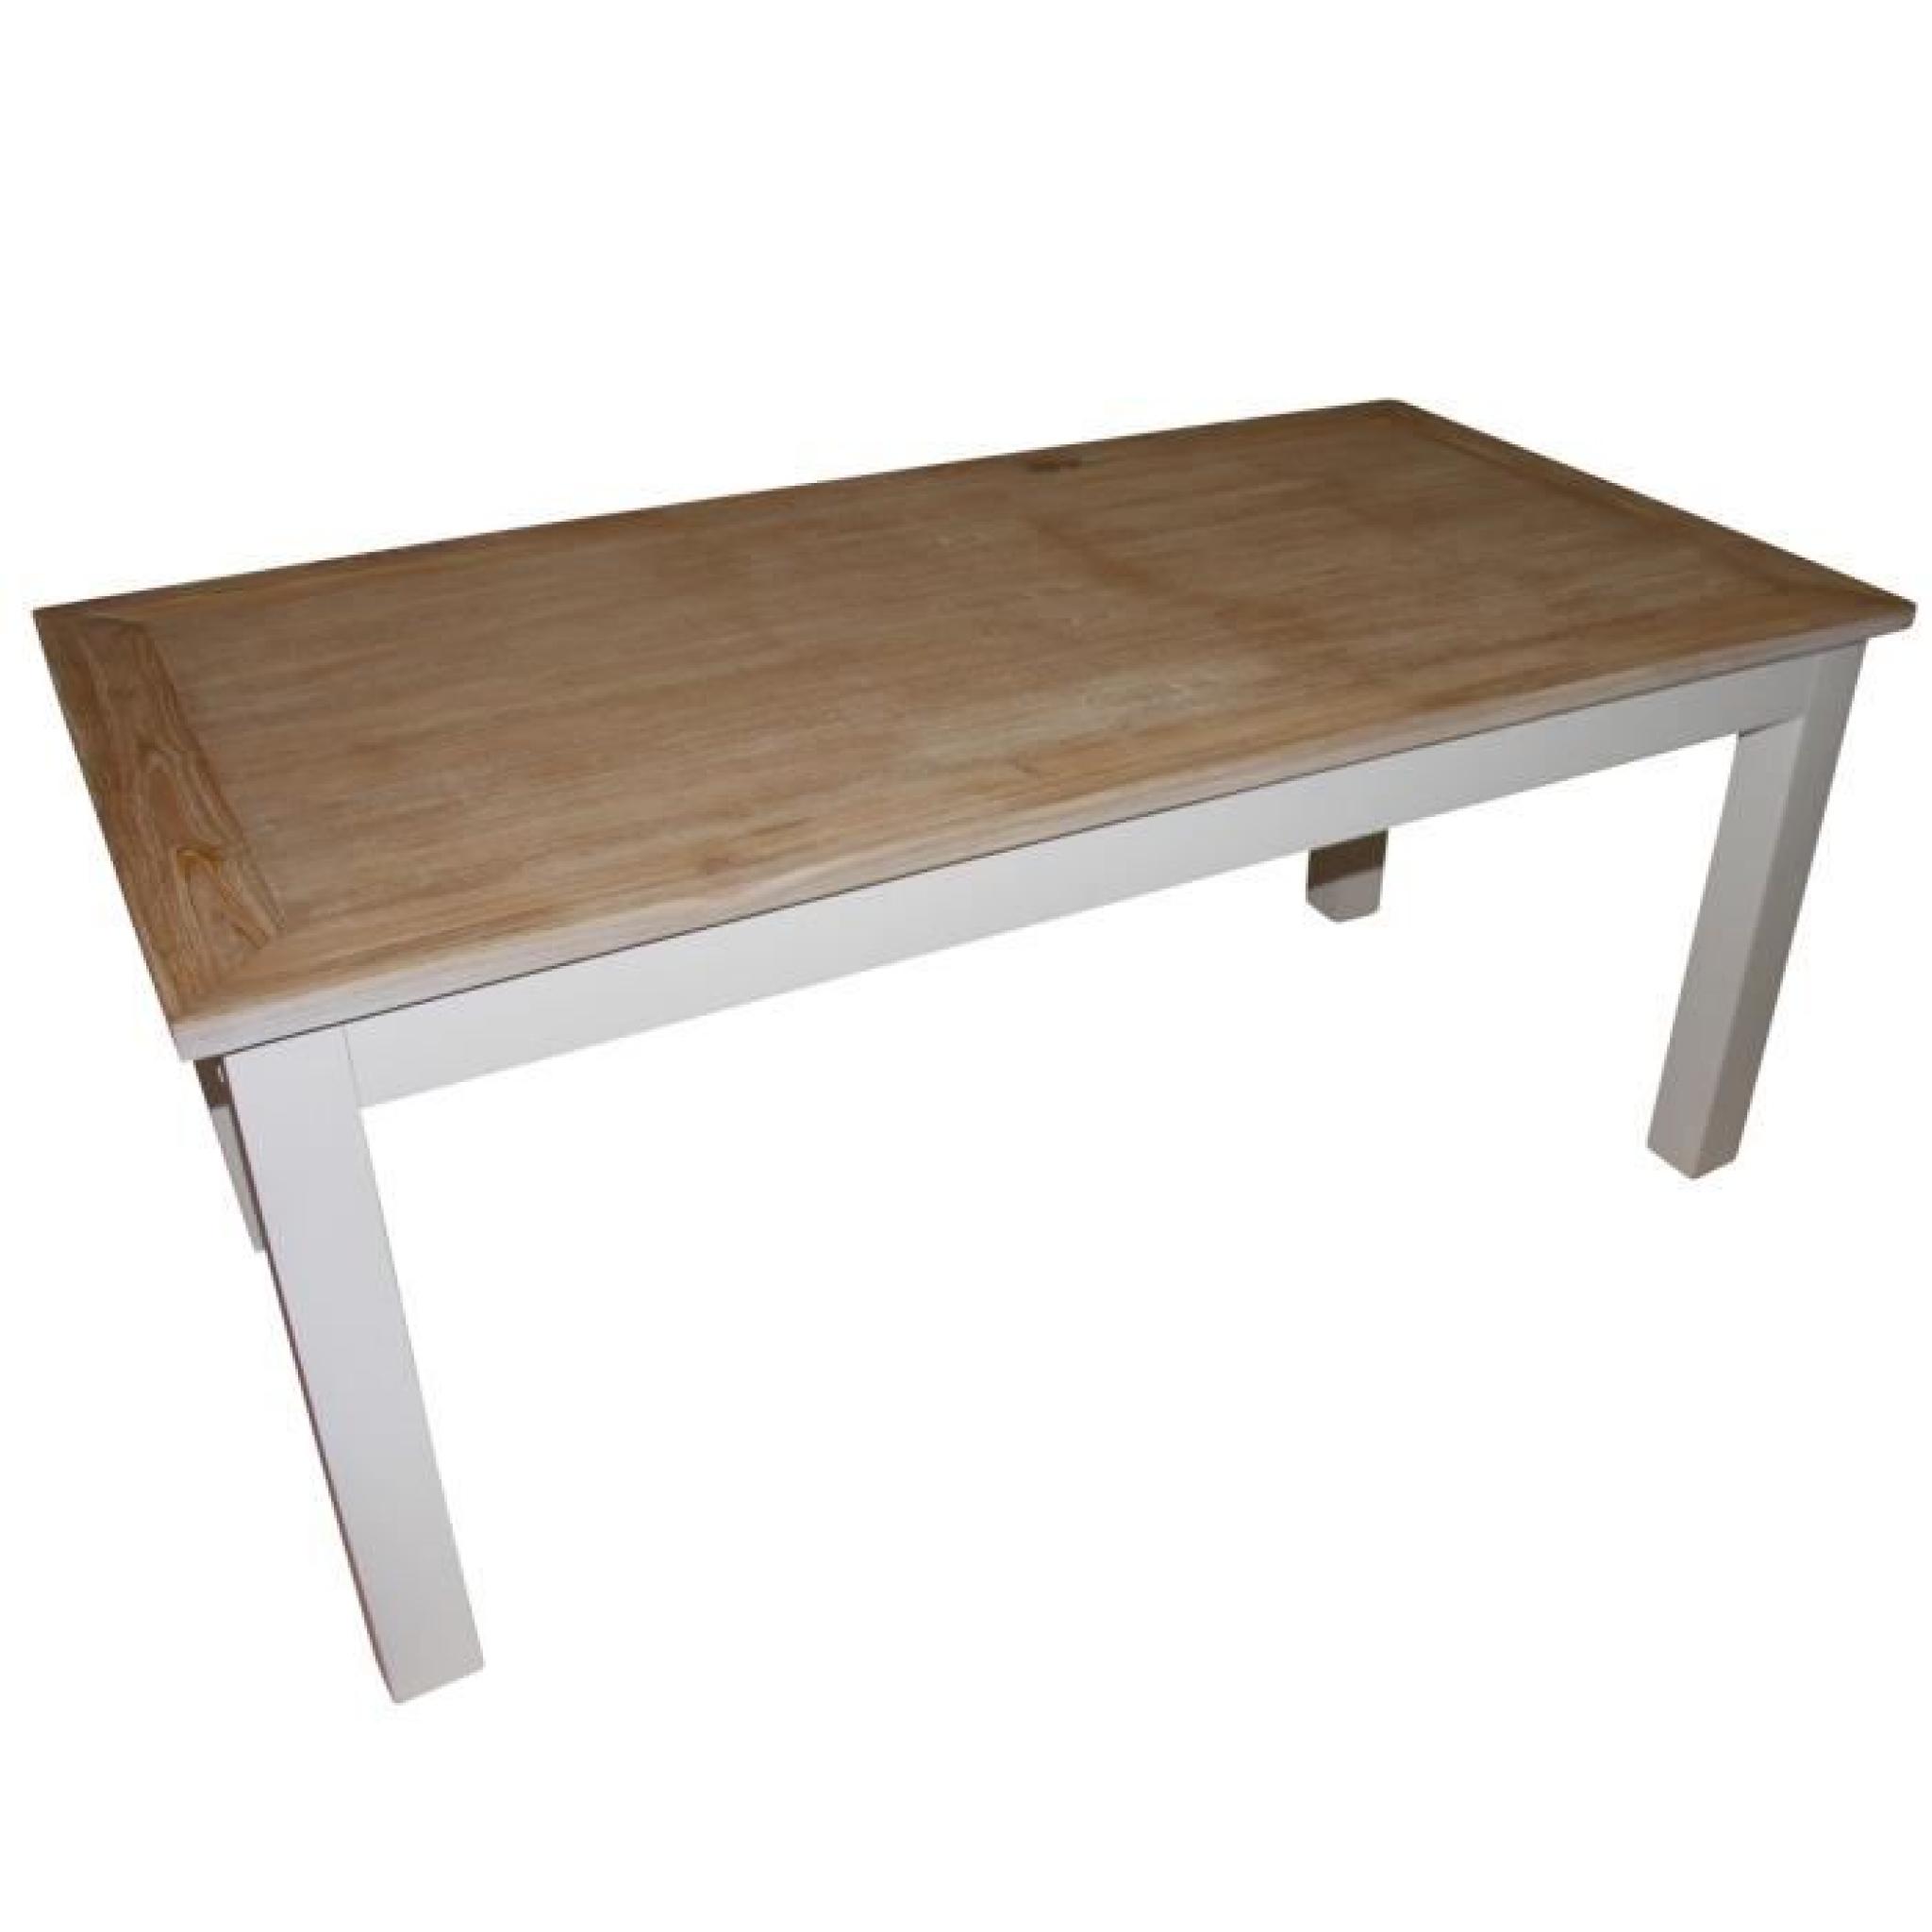 Table en acajou et teck rectangulaire - 180 x 90 cm - LONDRES pas cher